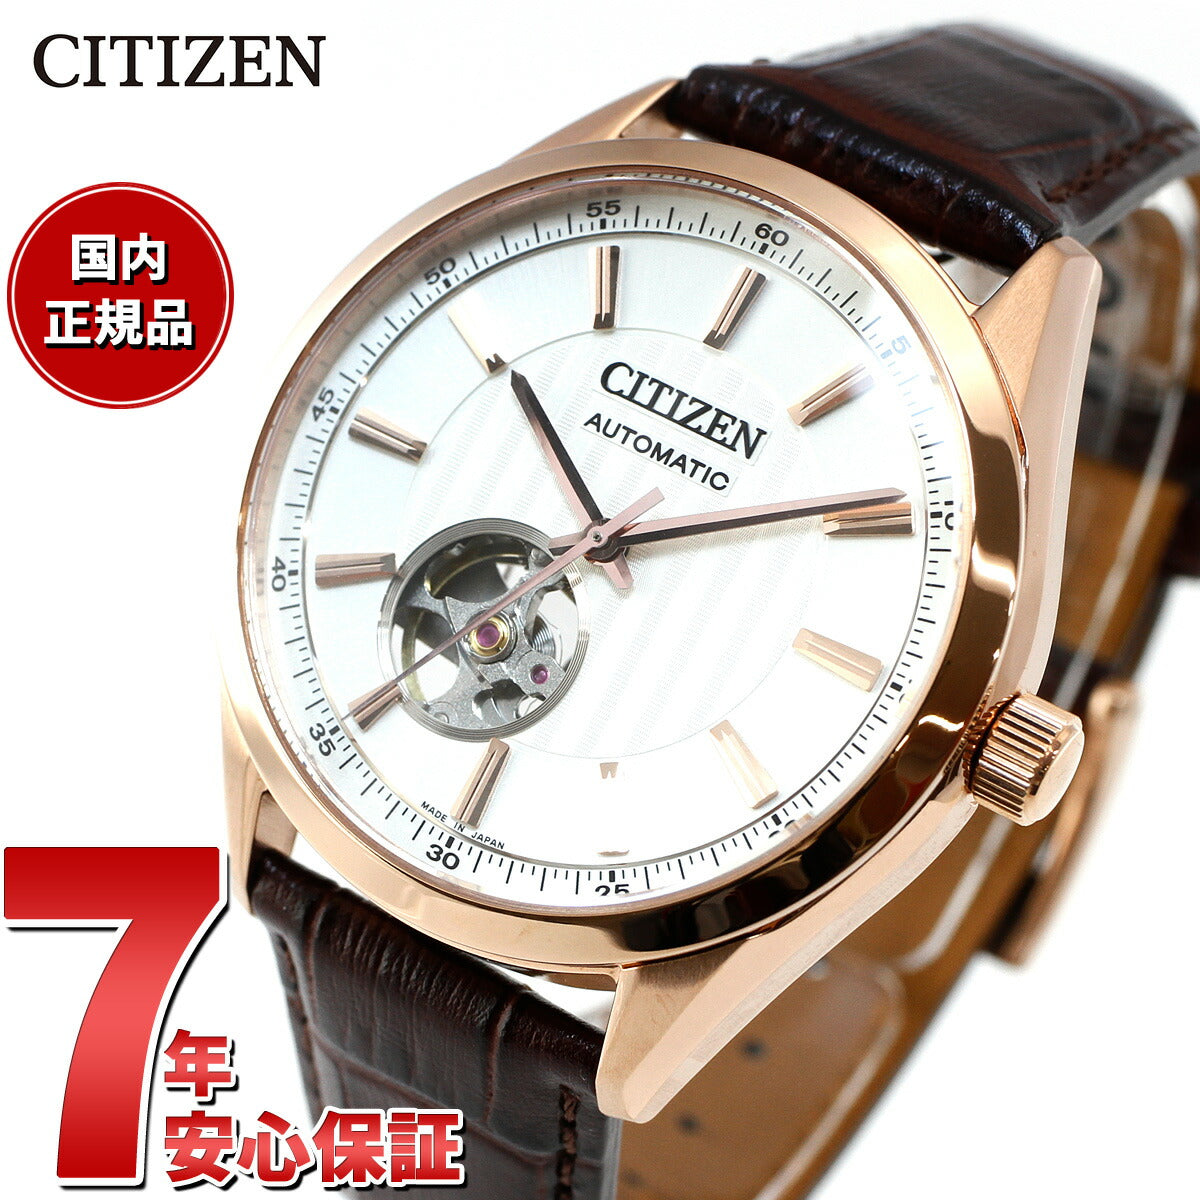 腕時計:citizen automatic値段下げたところですから - 腕時計(アナログ)